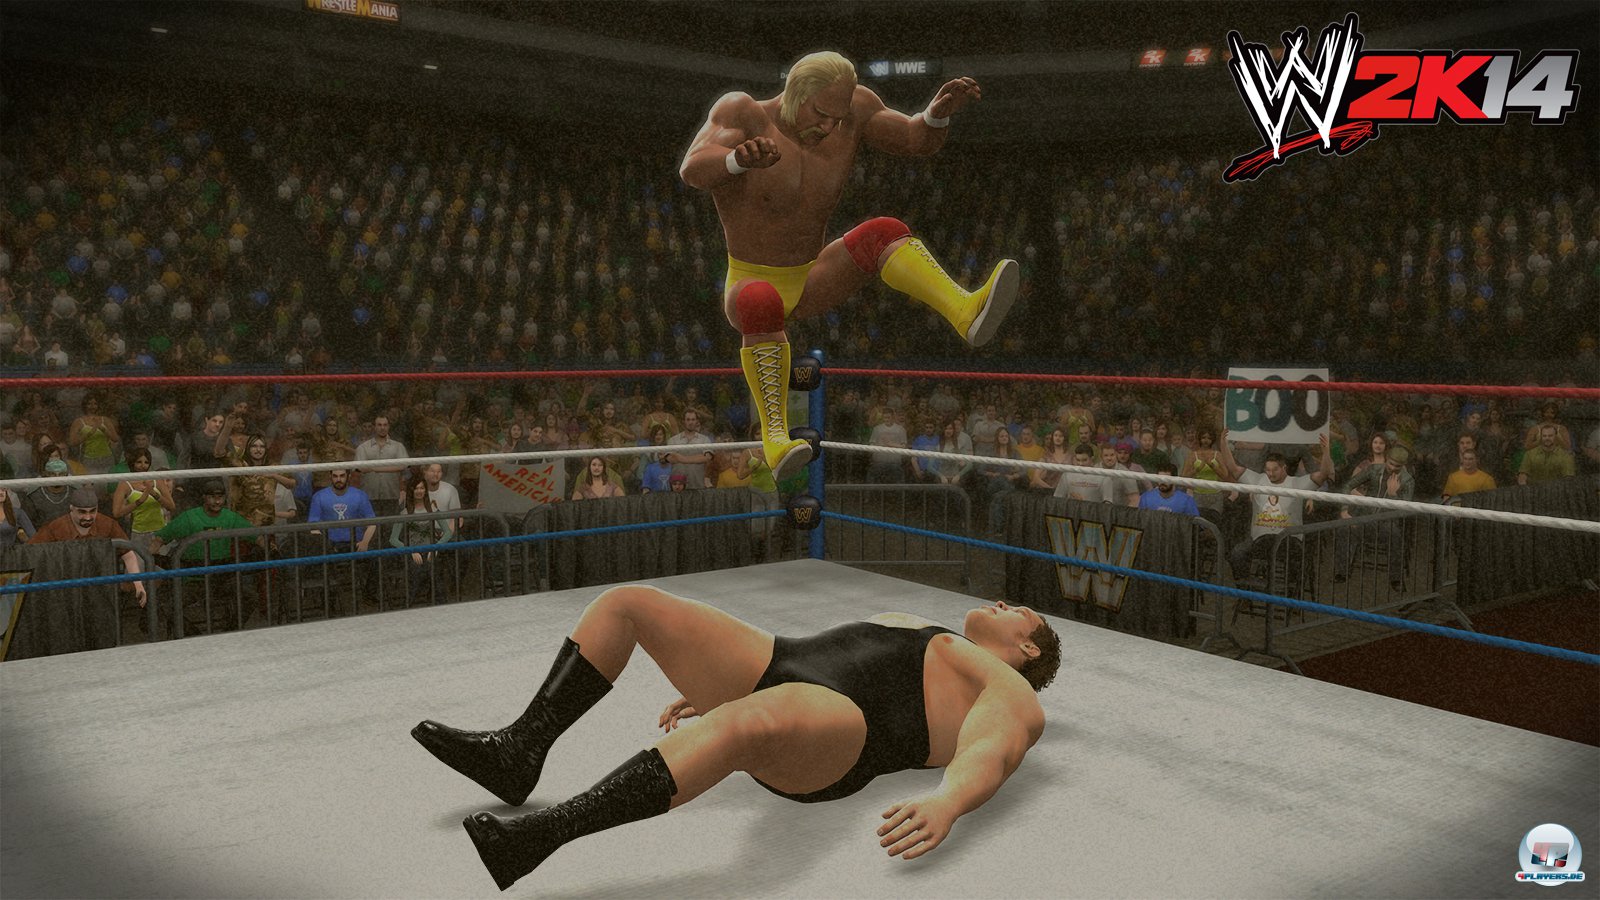 Geschichte zum Mitspielen: Hulk Hogan kämpft gegen André the Giant.